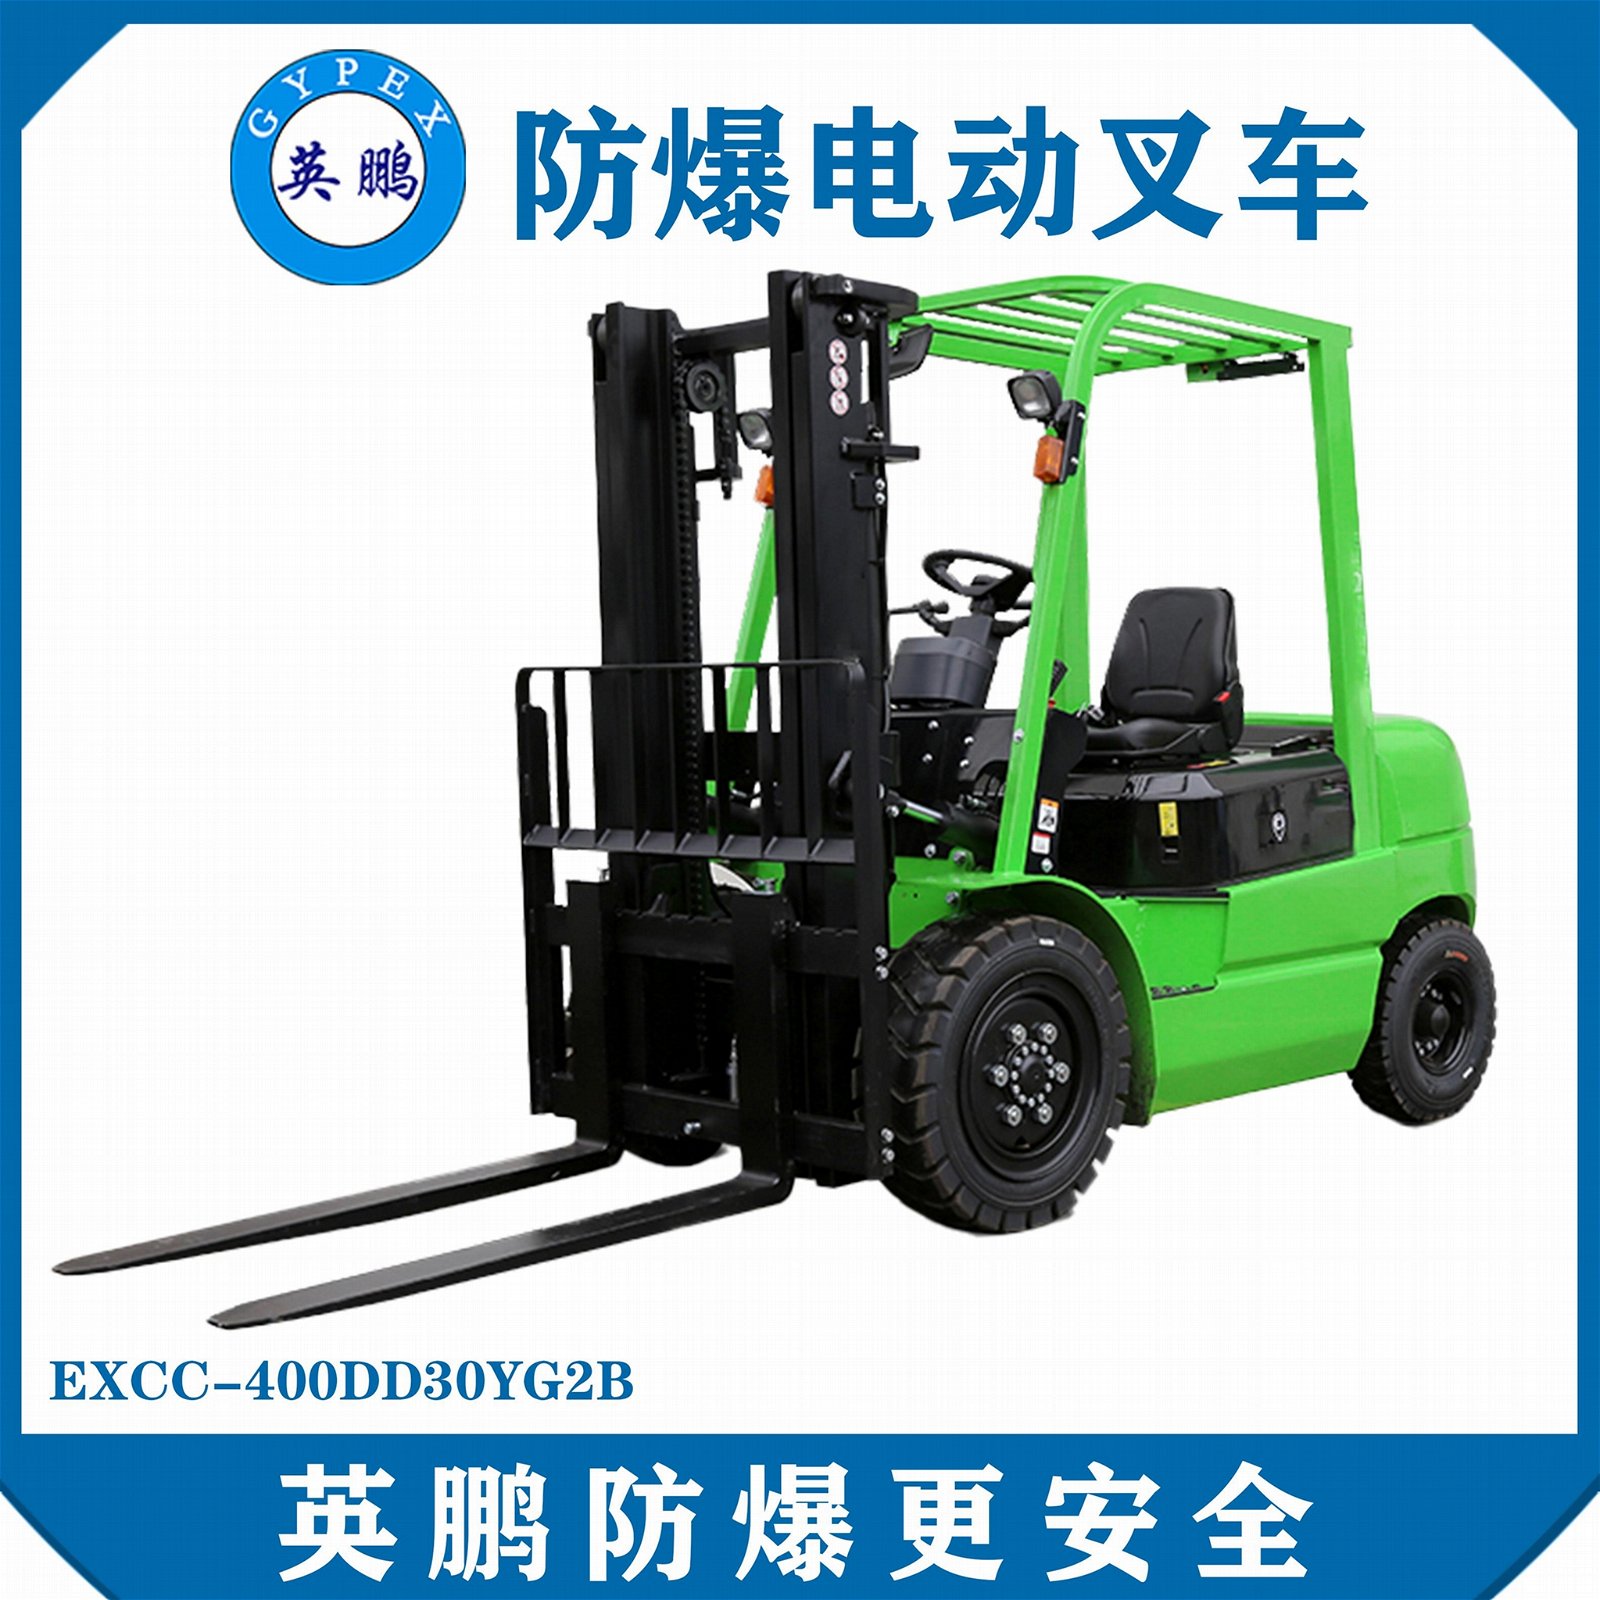 上海化工廠3.0 噸鋰電池平衡重叉車EXCC-400DD30YG2B